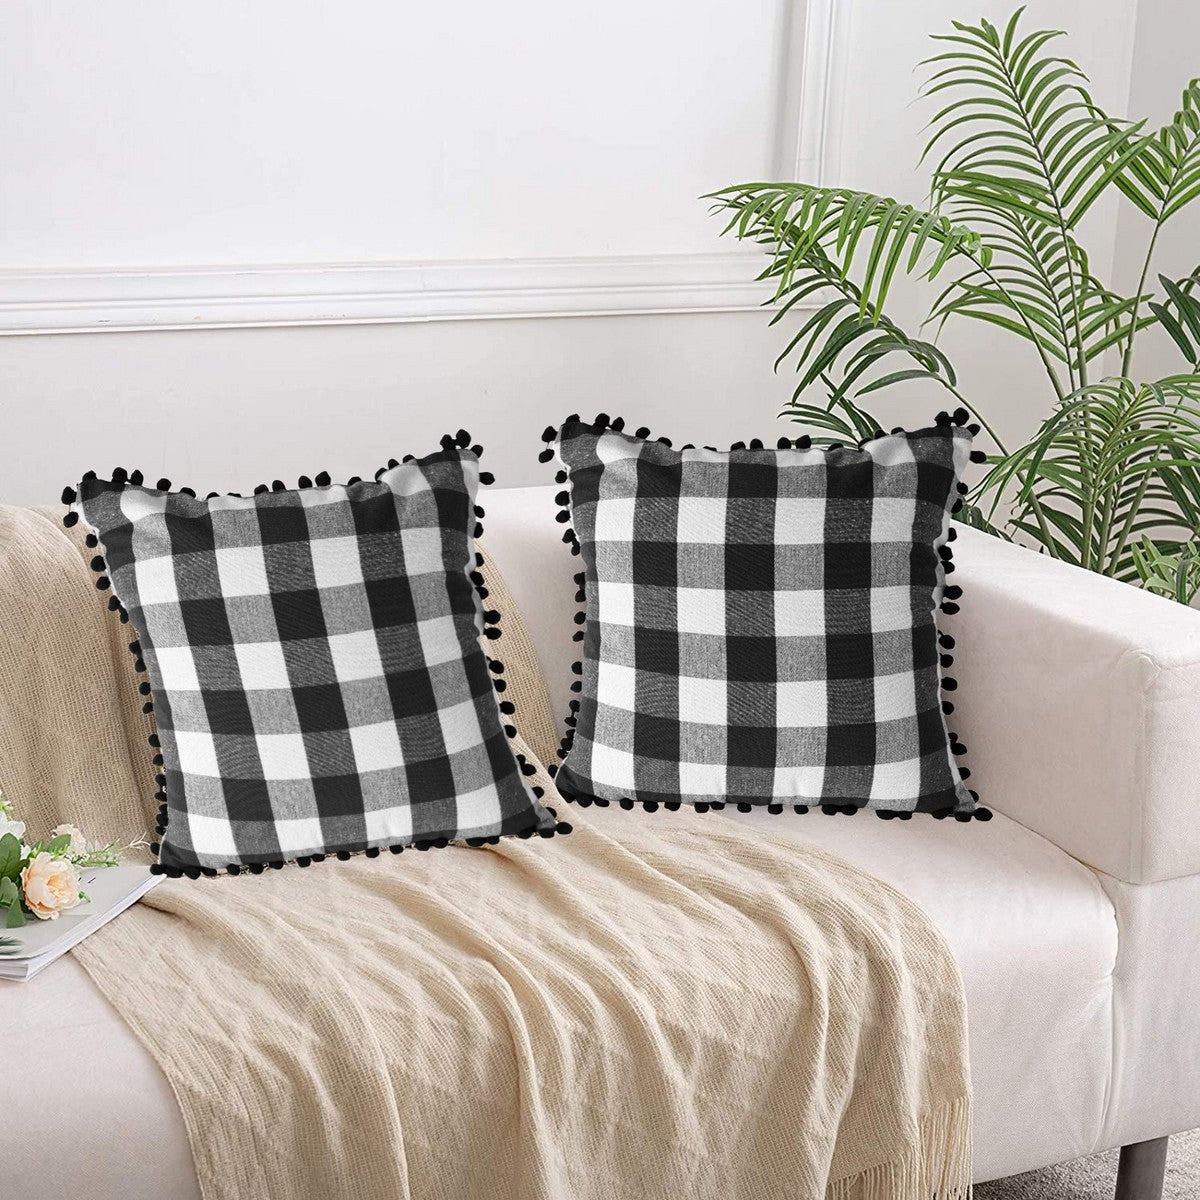 Lushomes Square Cushion Cover with Pom Pom, Cotton Sofa Pillow Cover Set of 2, 16x16 Inch, Big Checks, Black and White Checks, Pillow Cushions Covers (Pack of 2, 40x40 Cms)